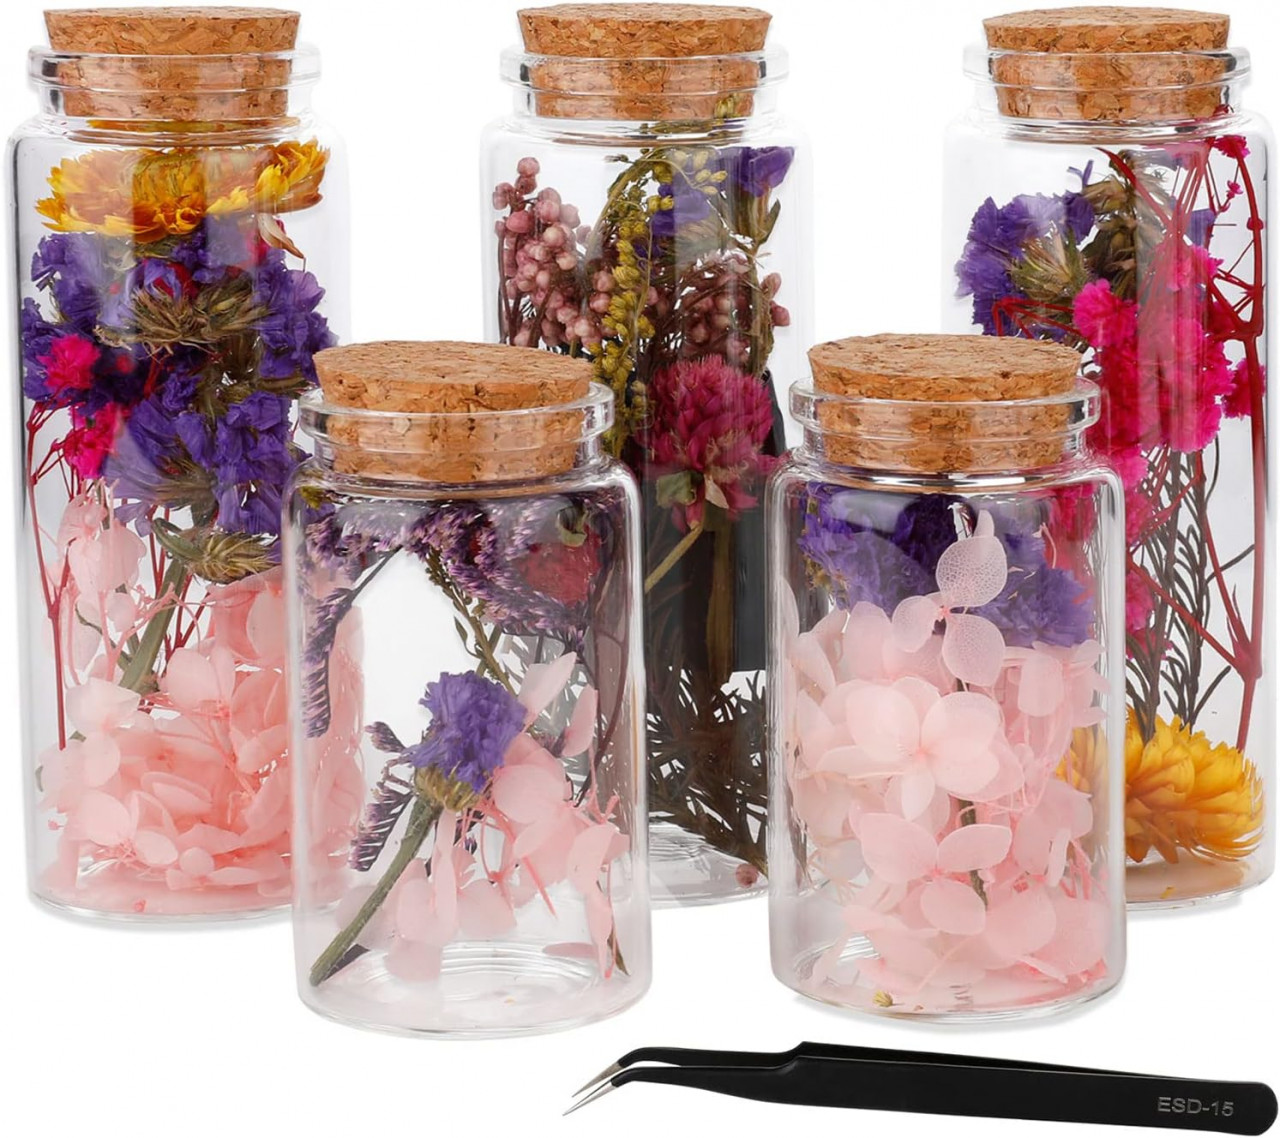 Set de 5 recipiente cu flori pentru mestesuguri Lyeiaa, sticla/flori uscate, multicolor, 12 x 4,7 cm / 8 x 4,7 cm chilipirul-zilei.ro/